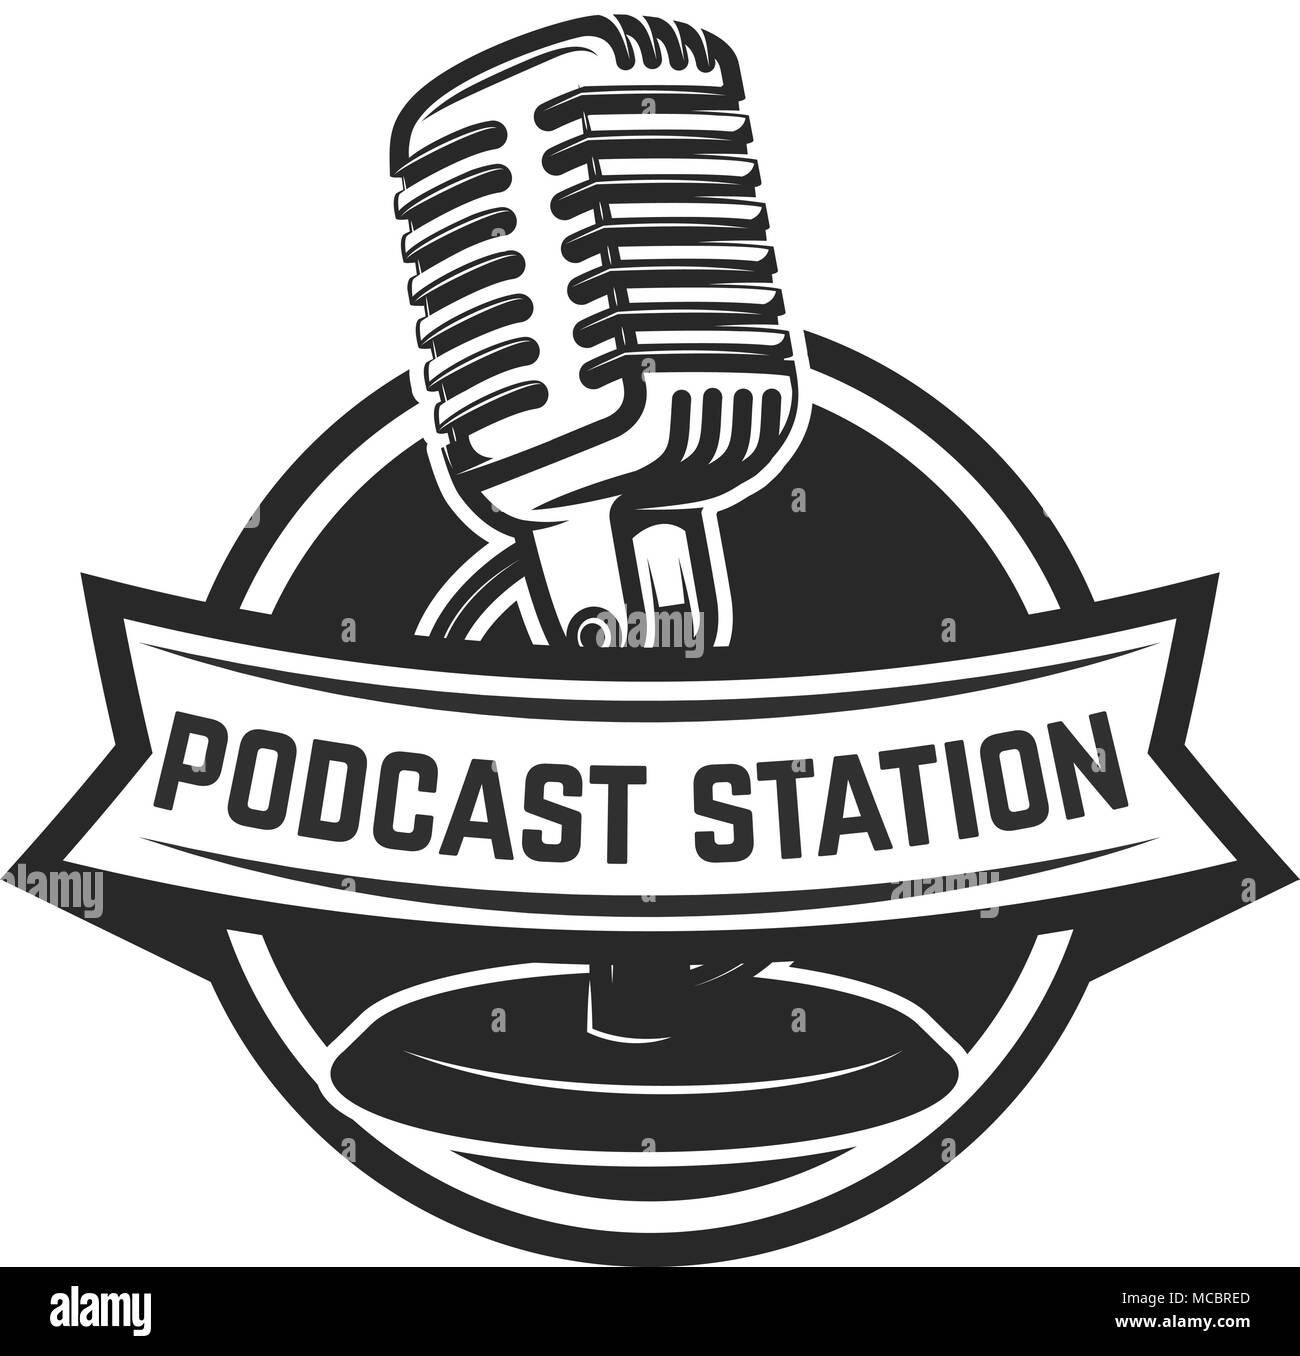 https://c8.alamy.com/comp/MCBRED/podcast-station-emblem-template-with-retro-microphone-design-element-for-logo-label-emblem-sign-vector-illustration-MCBRED.jpg